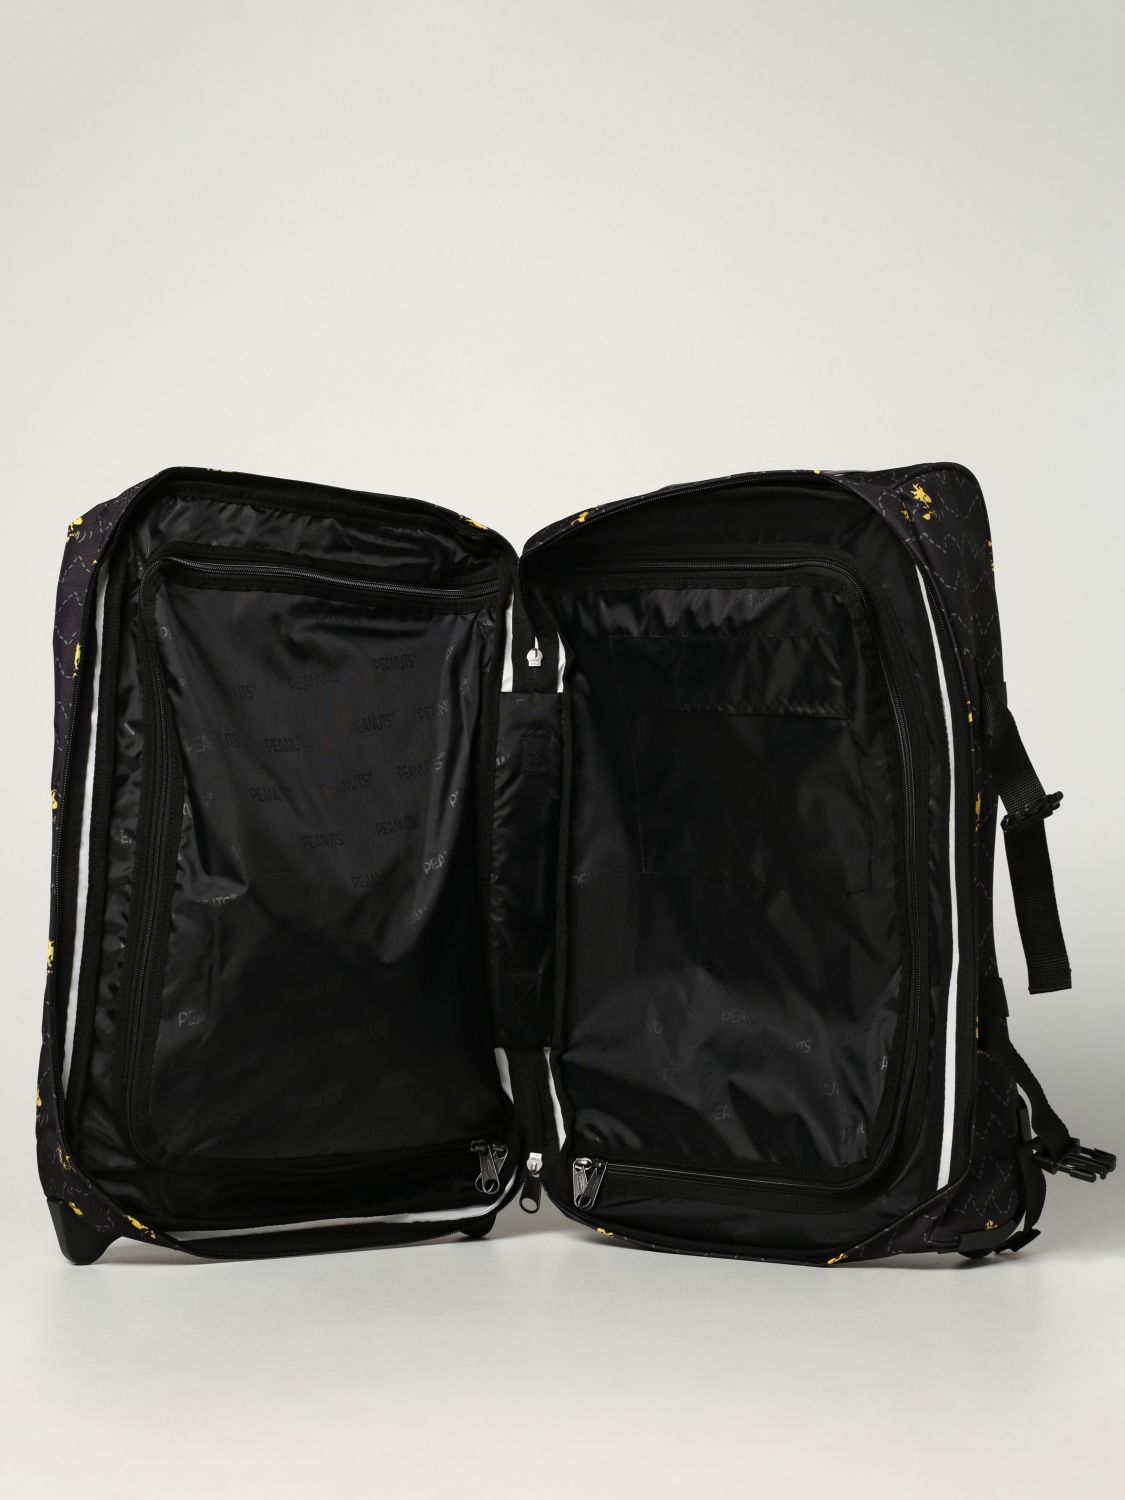 Travel bag Eastpak: Peanuts x Eastpak printed trolley black 2